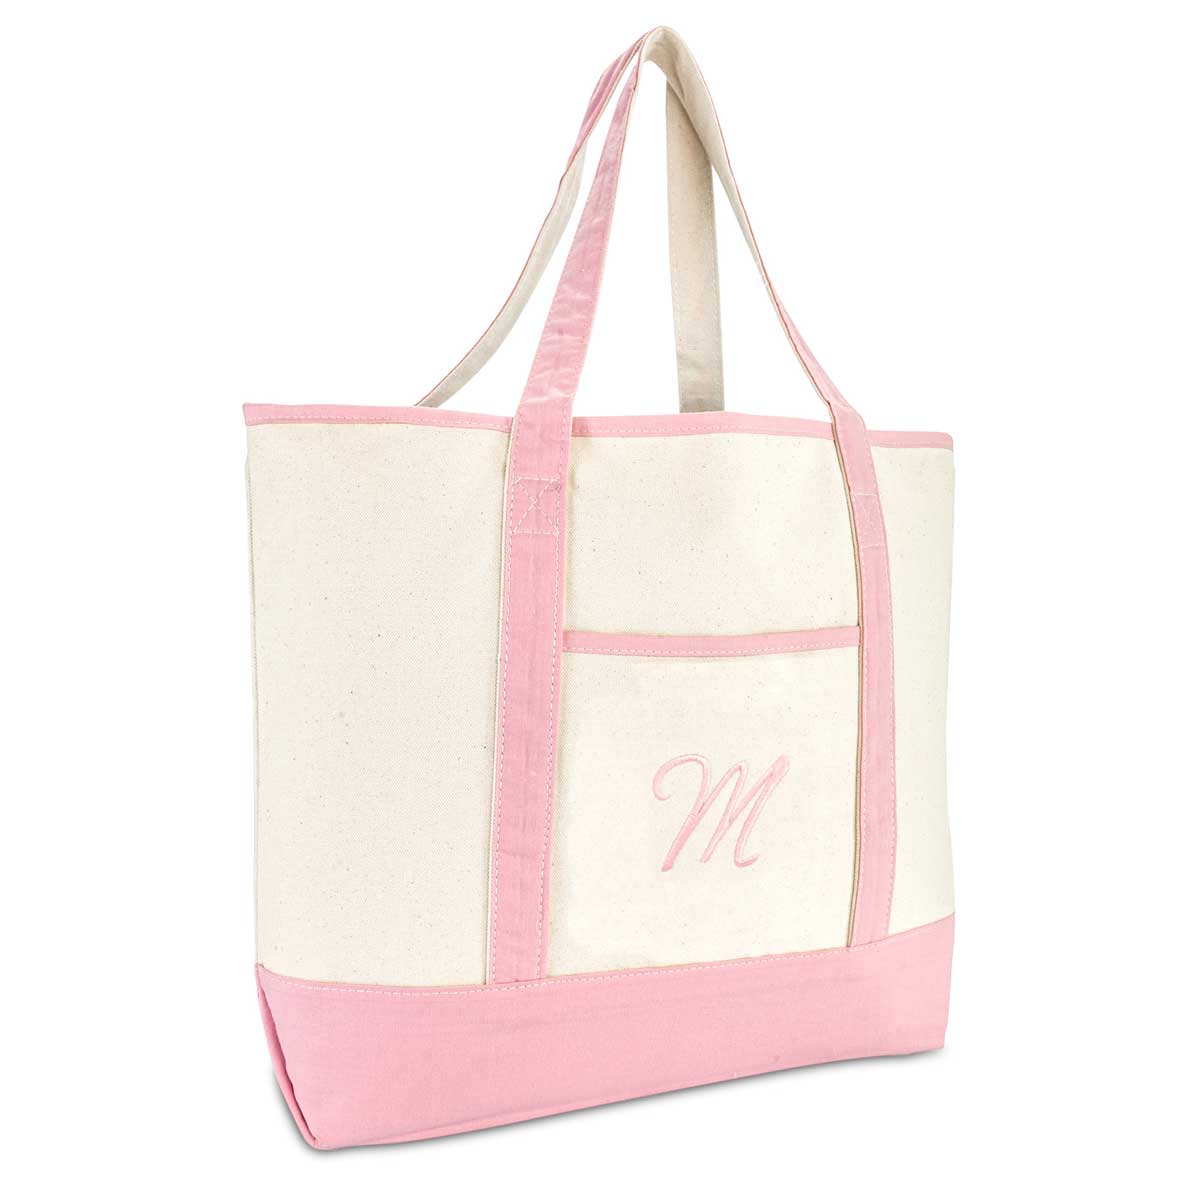 Dalix Women's Cotton Canvas Tote Bag Large Shoulder Bags Pink Monogram A-Z